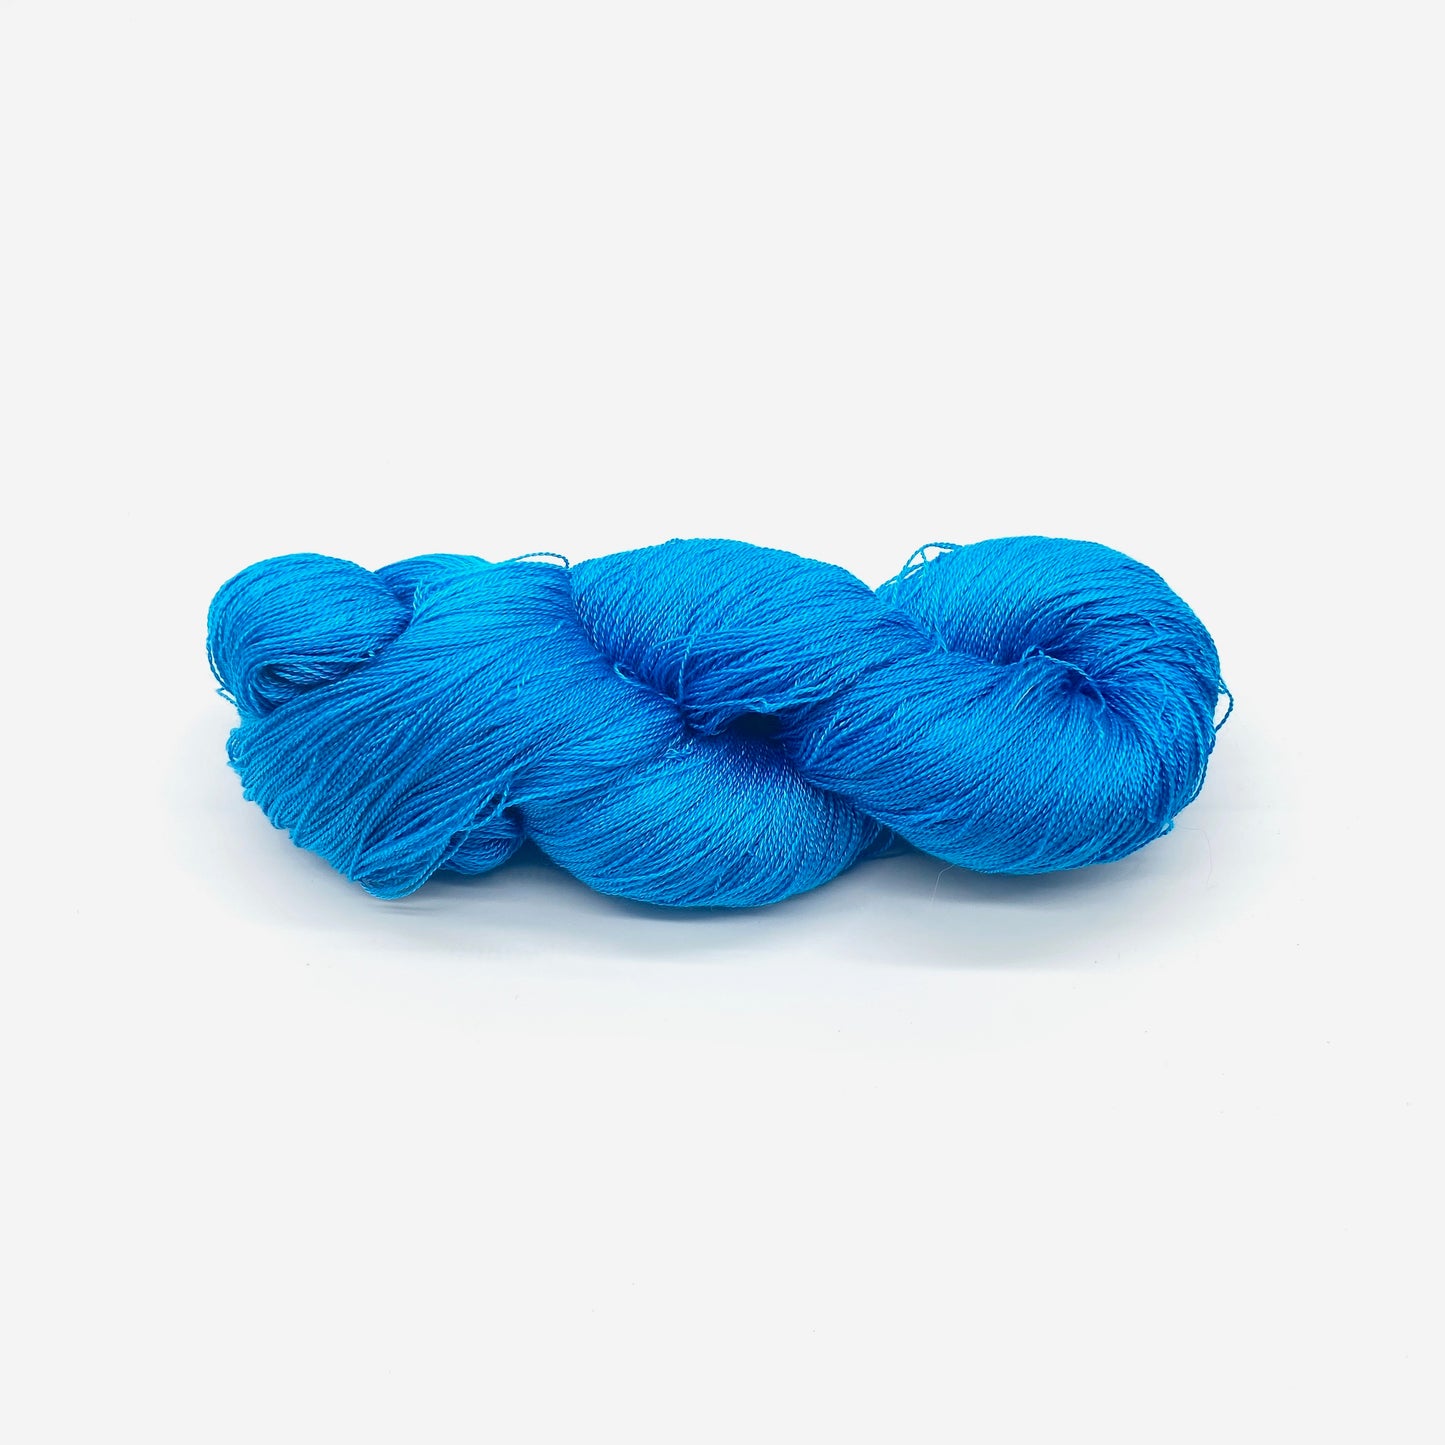 Semi Solid Tencel 10/2 Skeins - Sydney Sogol, Hand dyed Yarn, semi-solid-tencel-10-2-skeins, hand dyed yarn, hand painted yarn